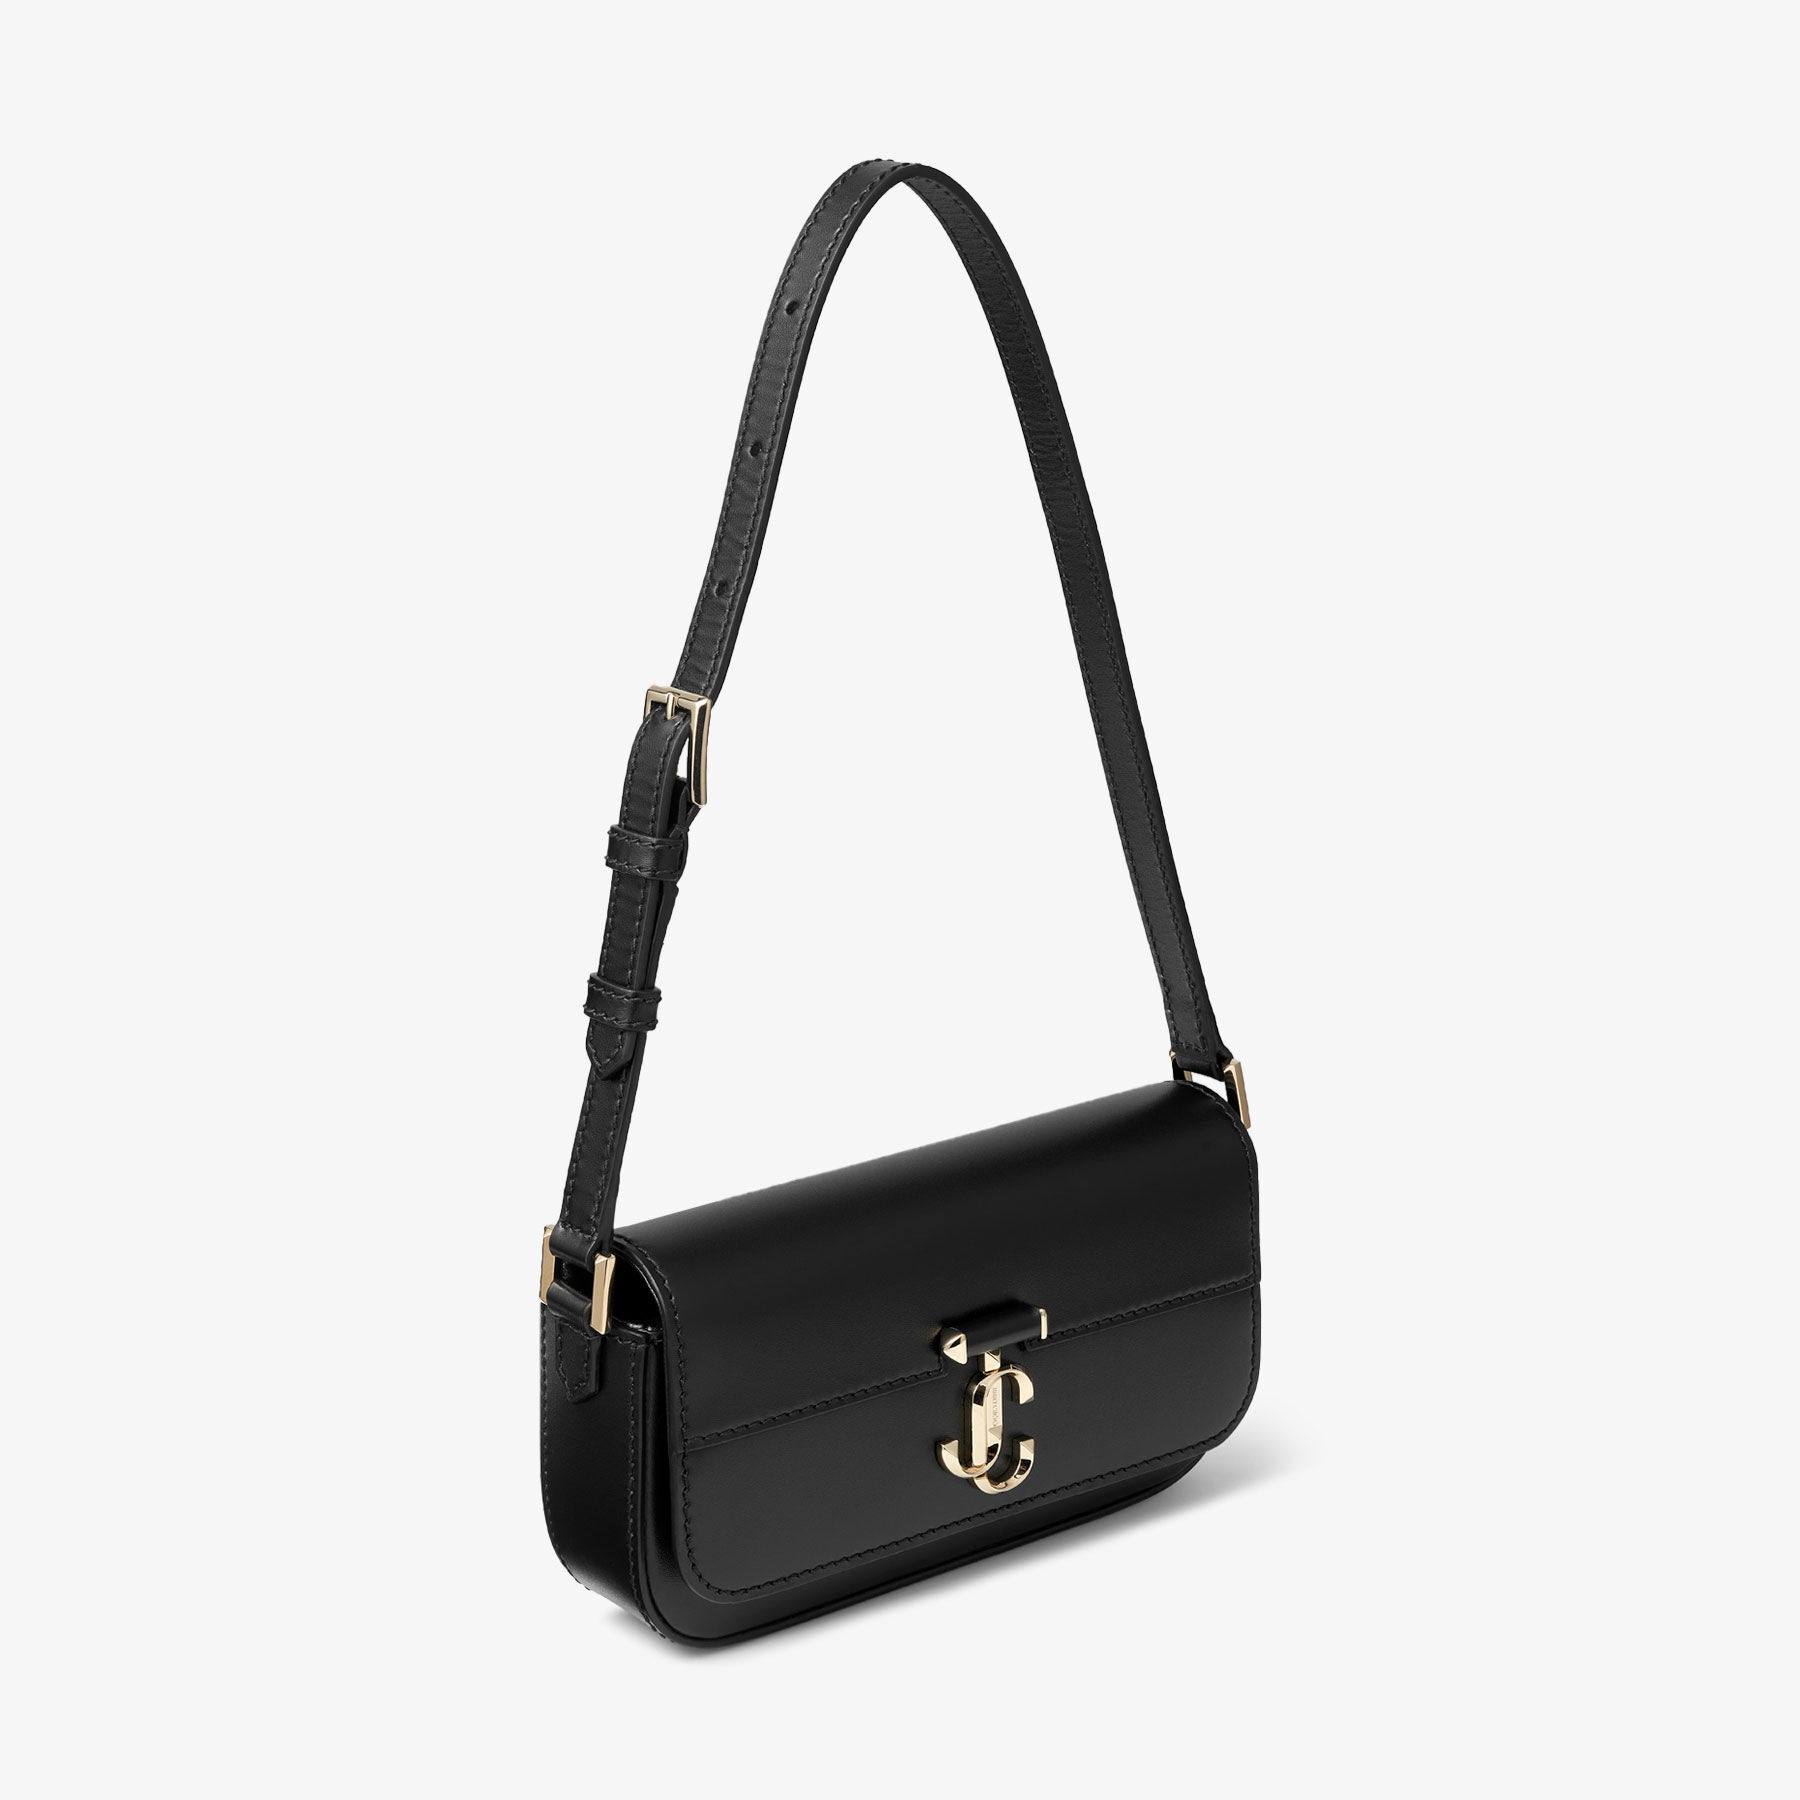 Varenne Mini Shoulder
Black Leather Mini Shoulder Bag with JC Emblem - 6